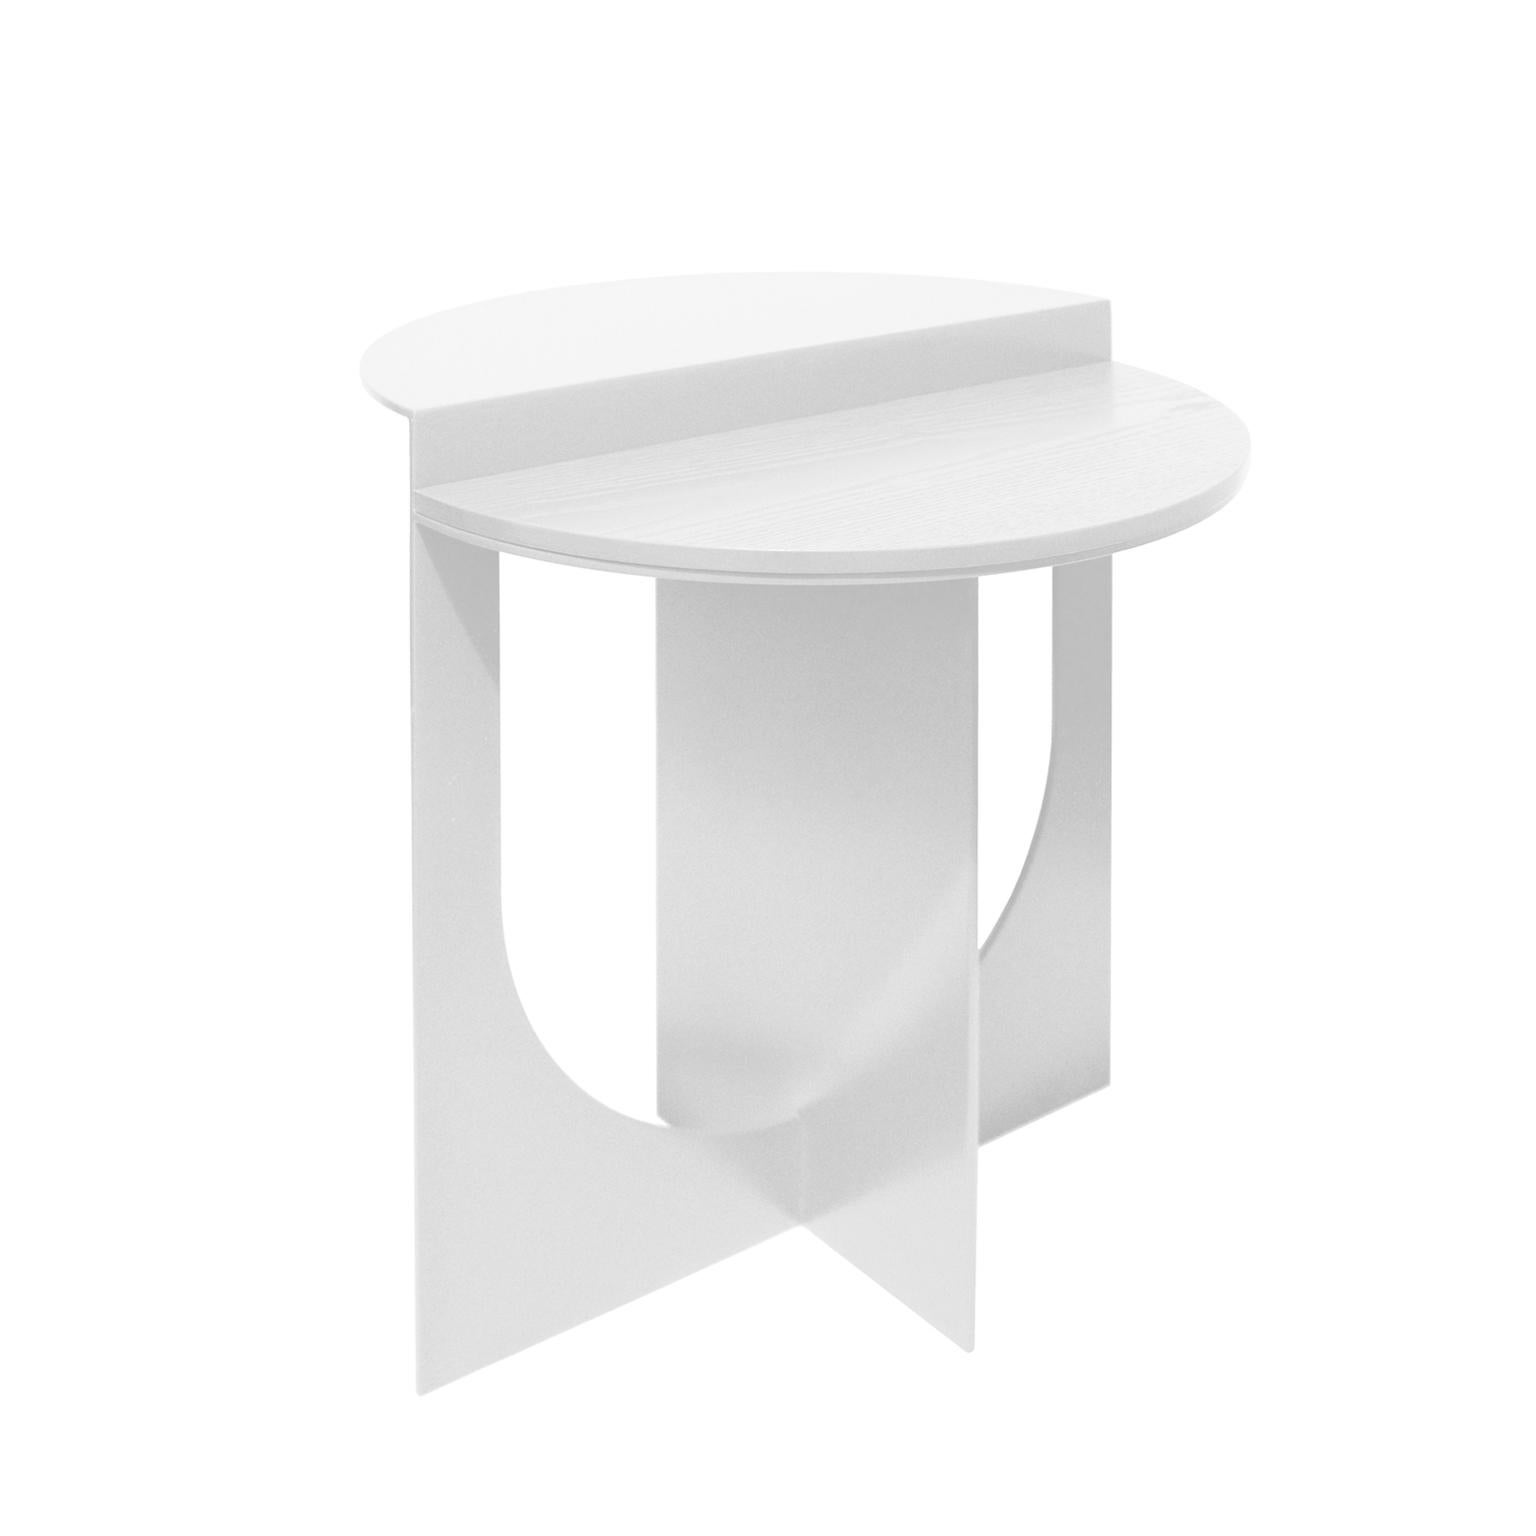 Plus a été créé dans un but précis. La positivité.
La table d'appoint Plus peut être utilisée pour créer des compositions intérieures dynamiques.
Le plateau de table peut être réalisé en bois, en verre ou en marbre.